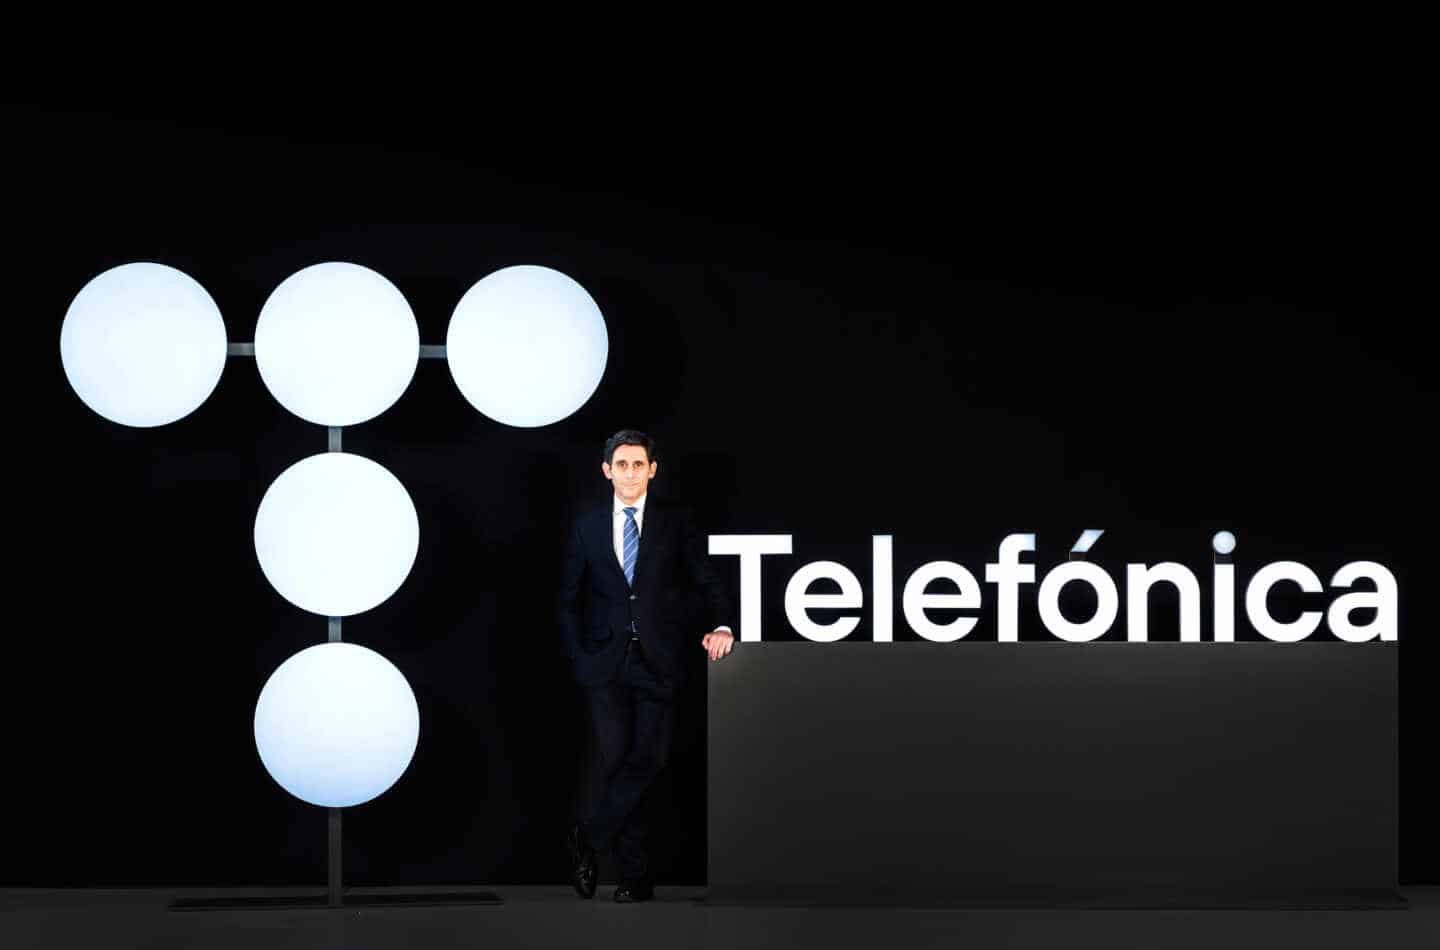 El presidente de Telefónica, Álvarez-Pallete, en la junta de accionistas de 2021 posa con el nuevo logo